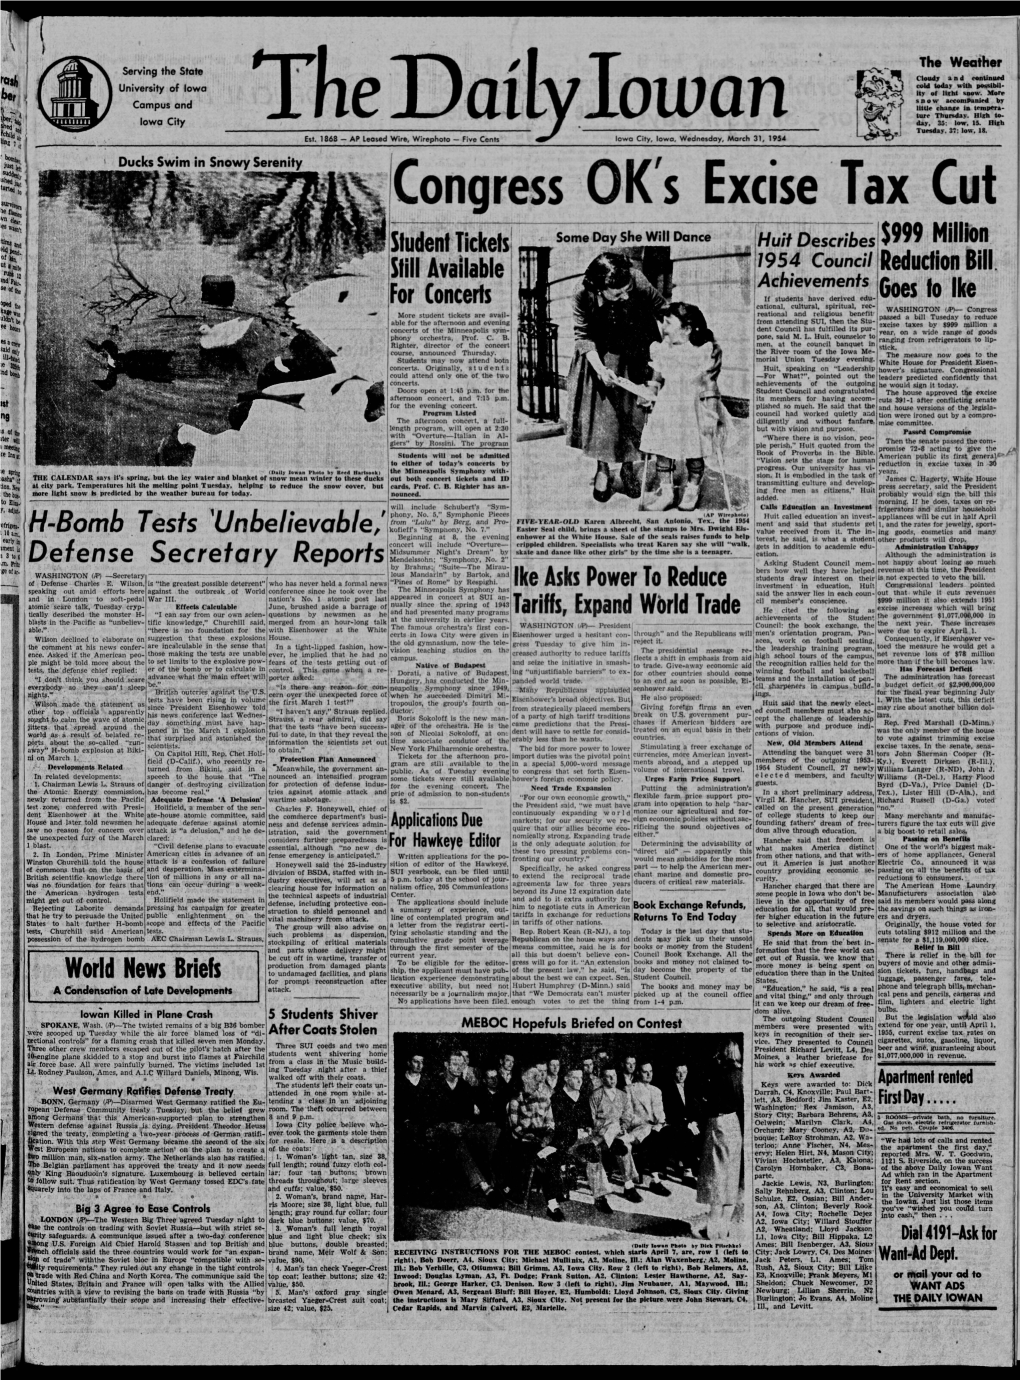 Daily Iowan (Iowa City, Iowa), 1954-03-31